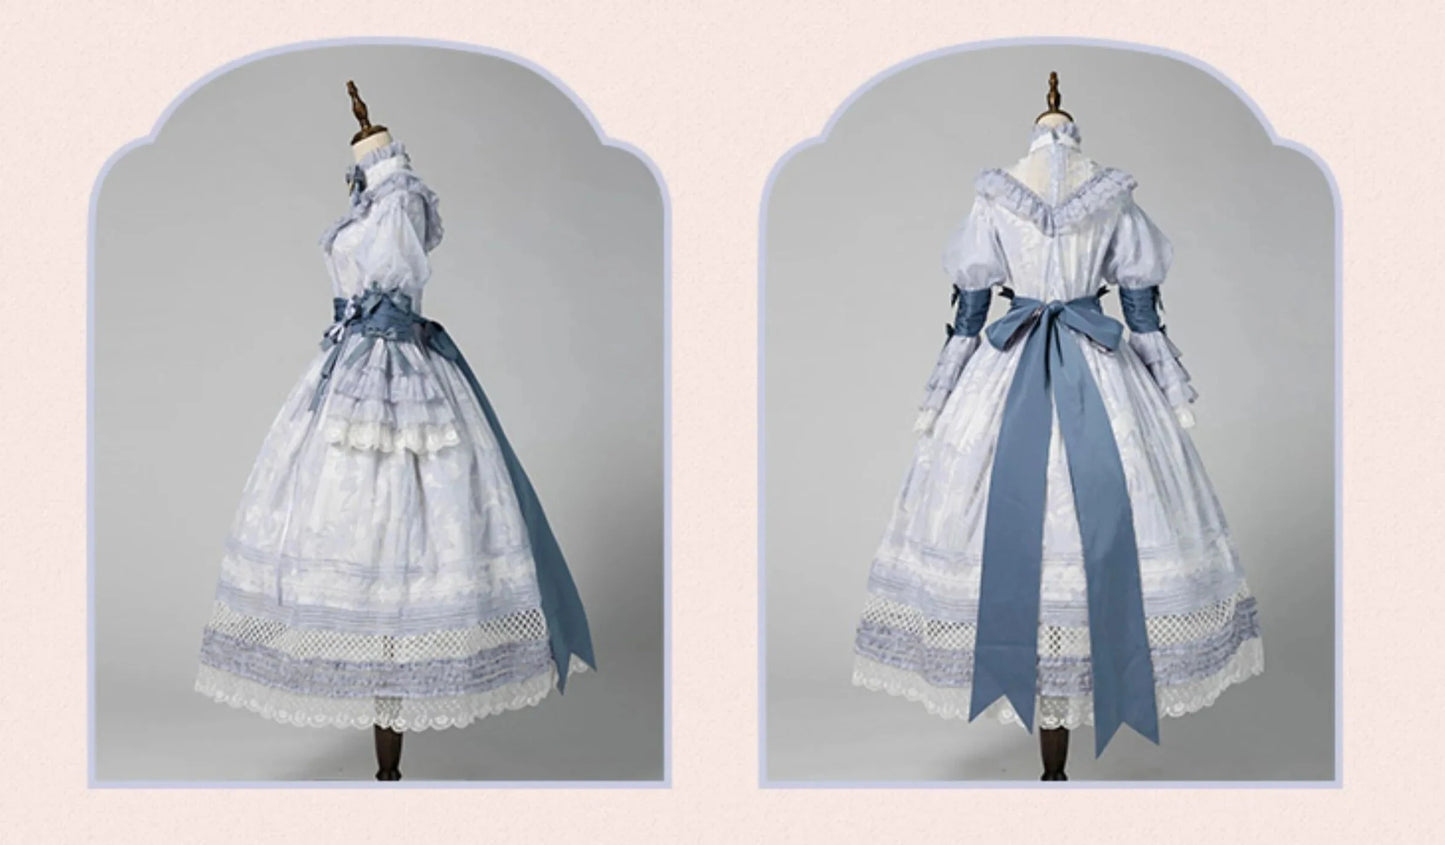 【販売期間終了】少女人形 十六女 蔷薇と百合のドレス